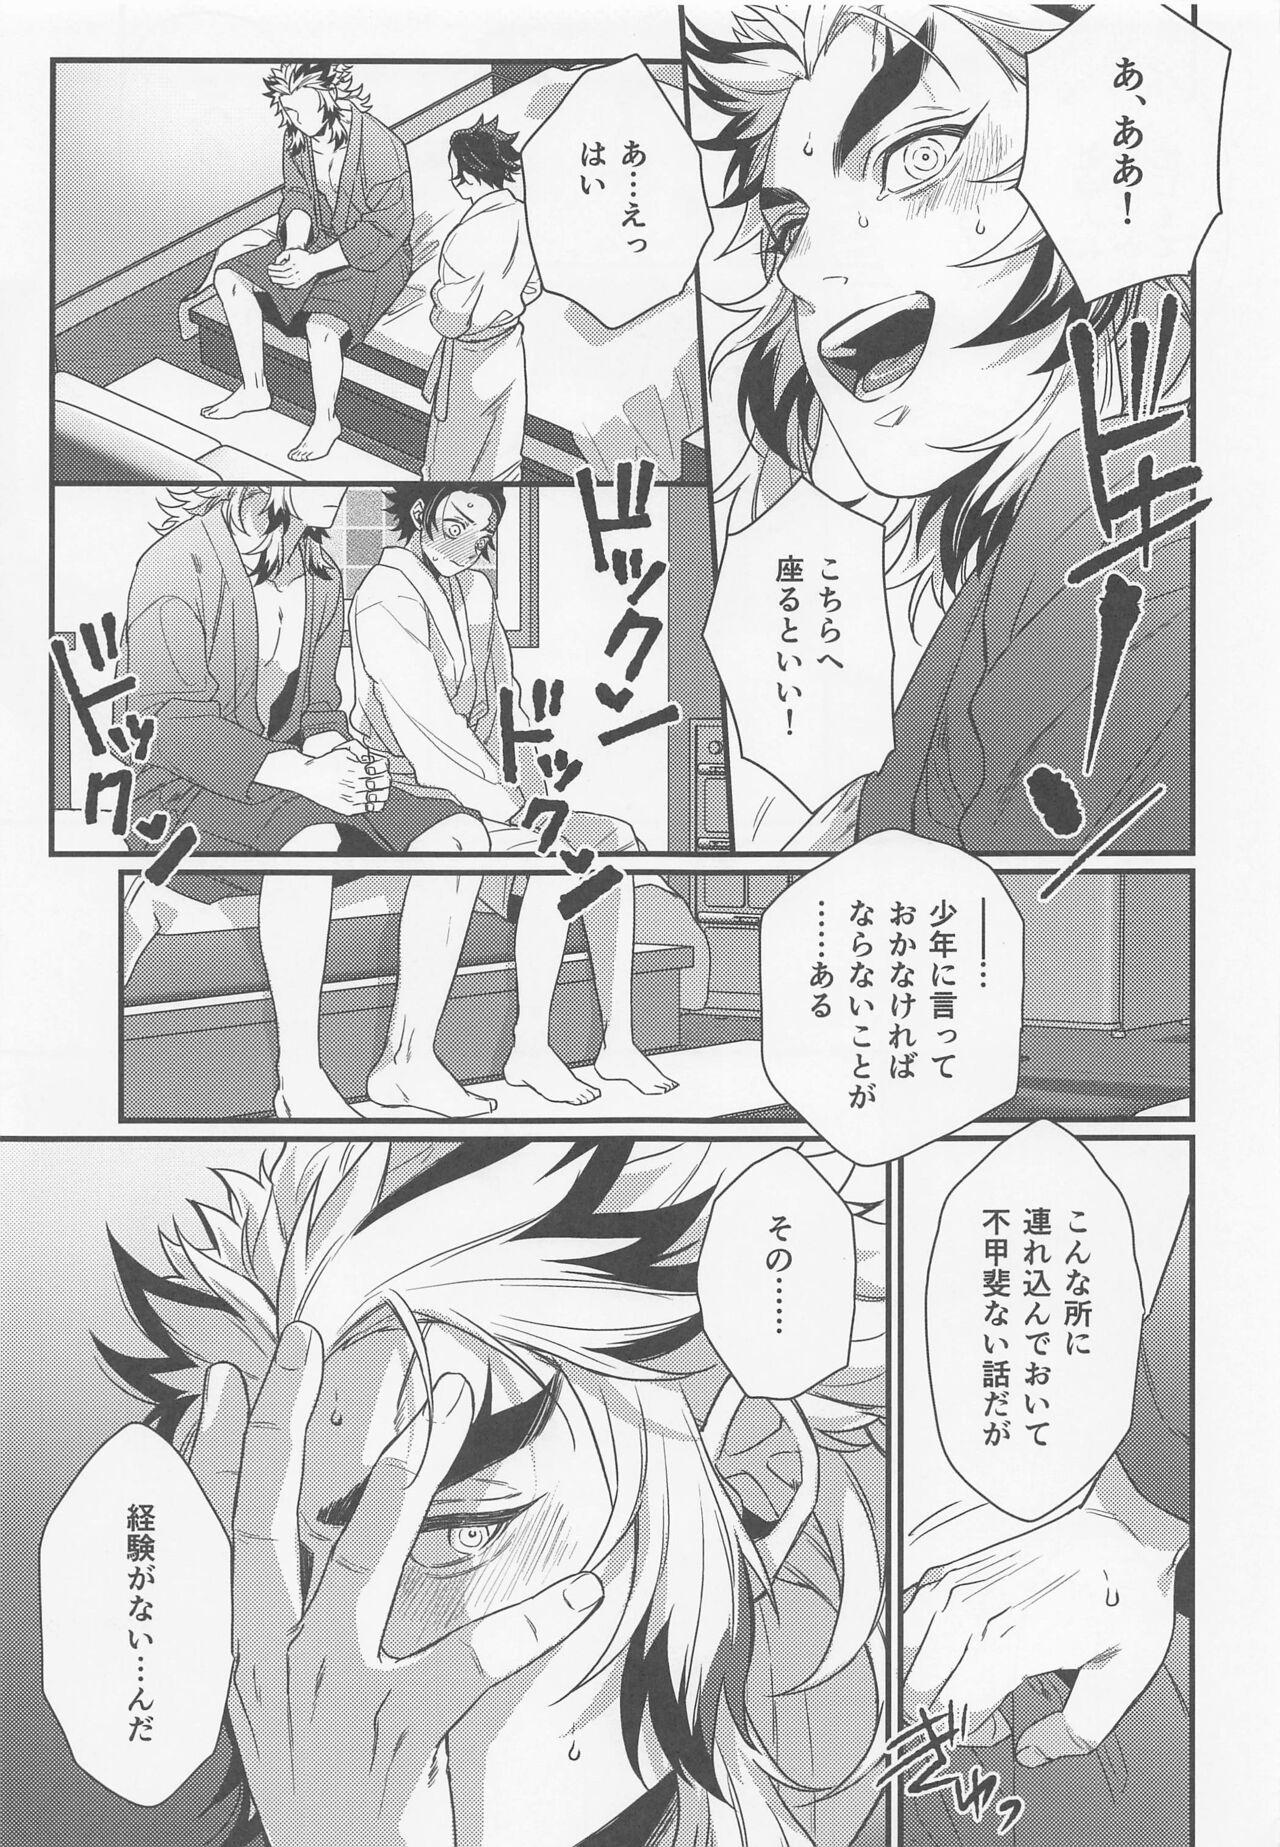 Small Tits sukida、shonen、daisukida - Kimetsu no yaiba | demon slayer Gay Party - Page 10